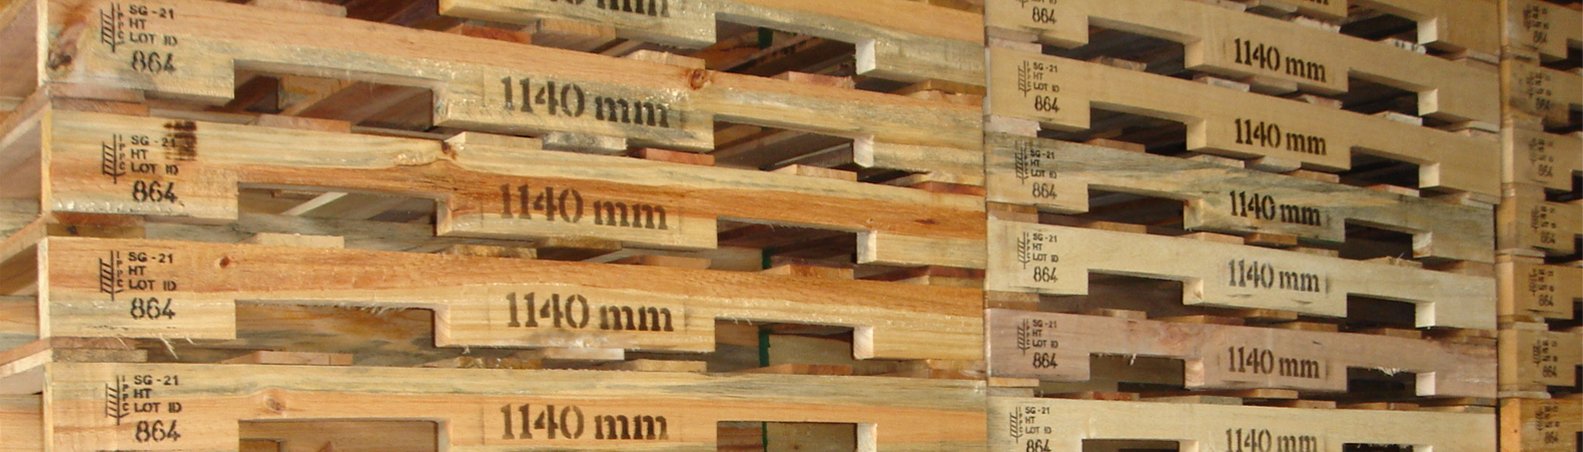 Купить деревянные поддоны и паллеты в Домодедово